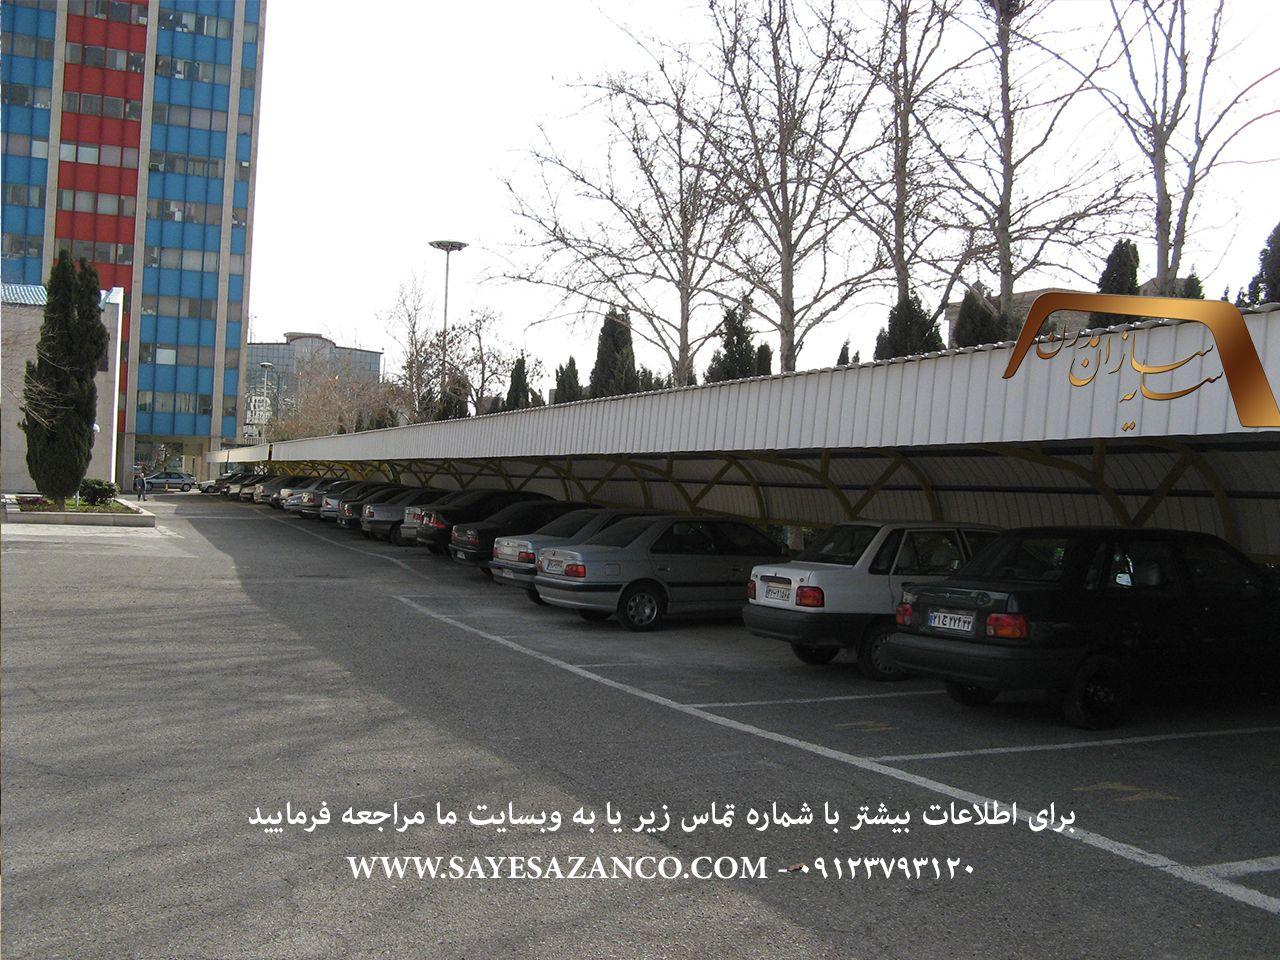 ساخت سایبان پیش ساخته در تهران،سایبان خودرو،سایبان اداری ،سایه بان برای ماشین،ساخت سایبان برای خودرو